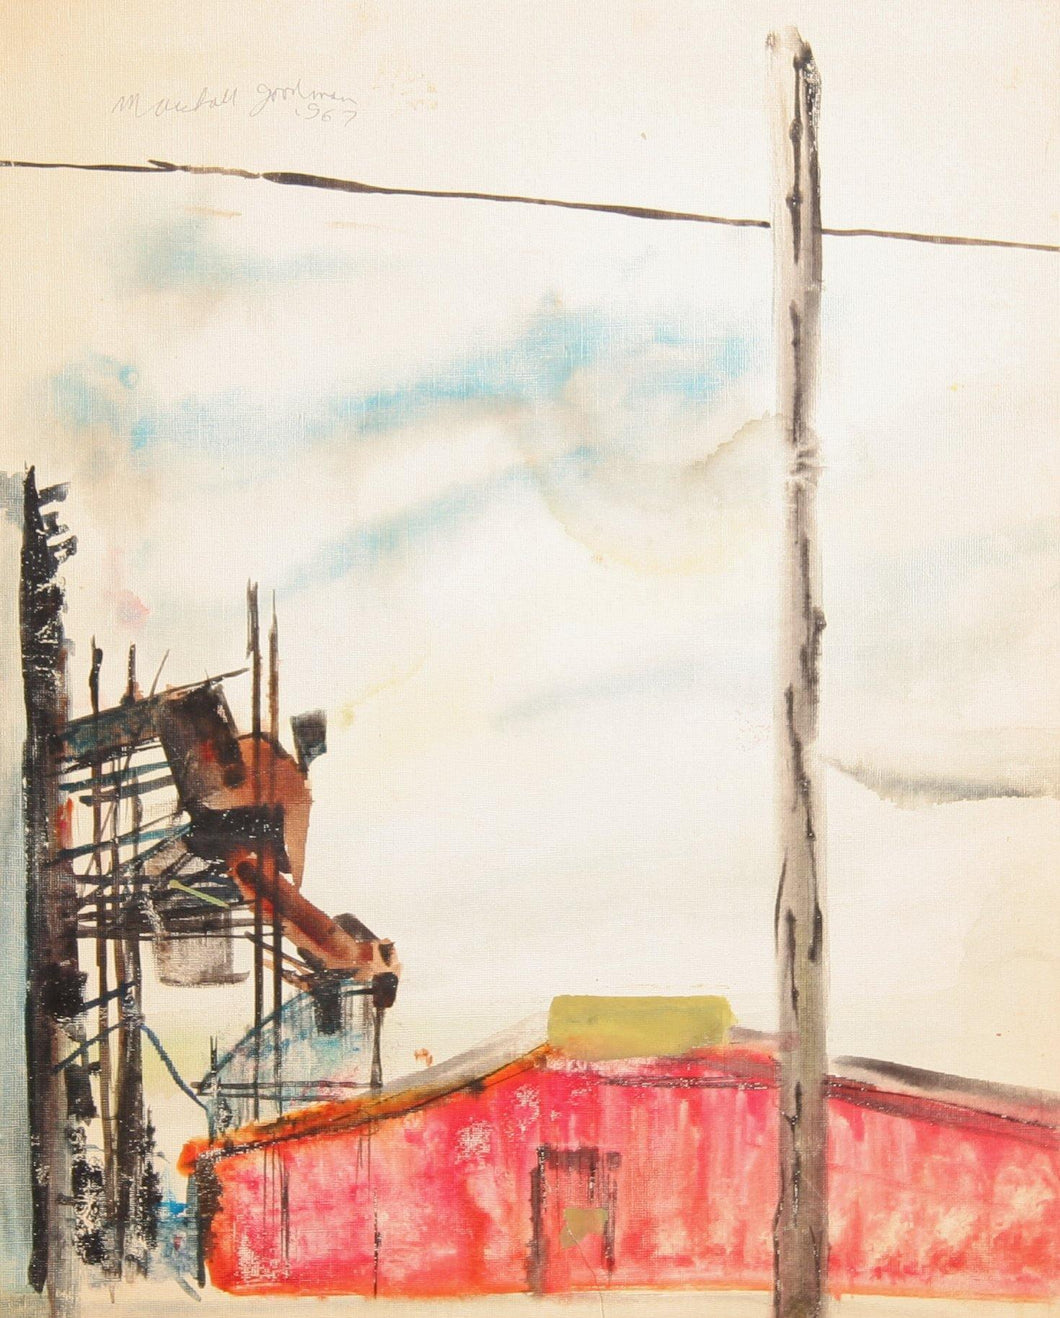 Metal Scrap Yard Watercolor | Marshall Goodman,{{product.type}}